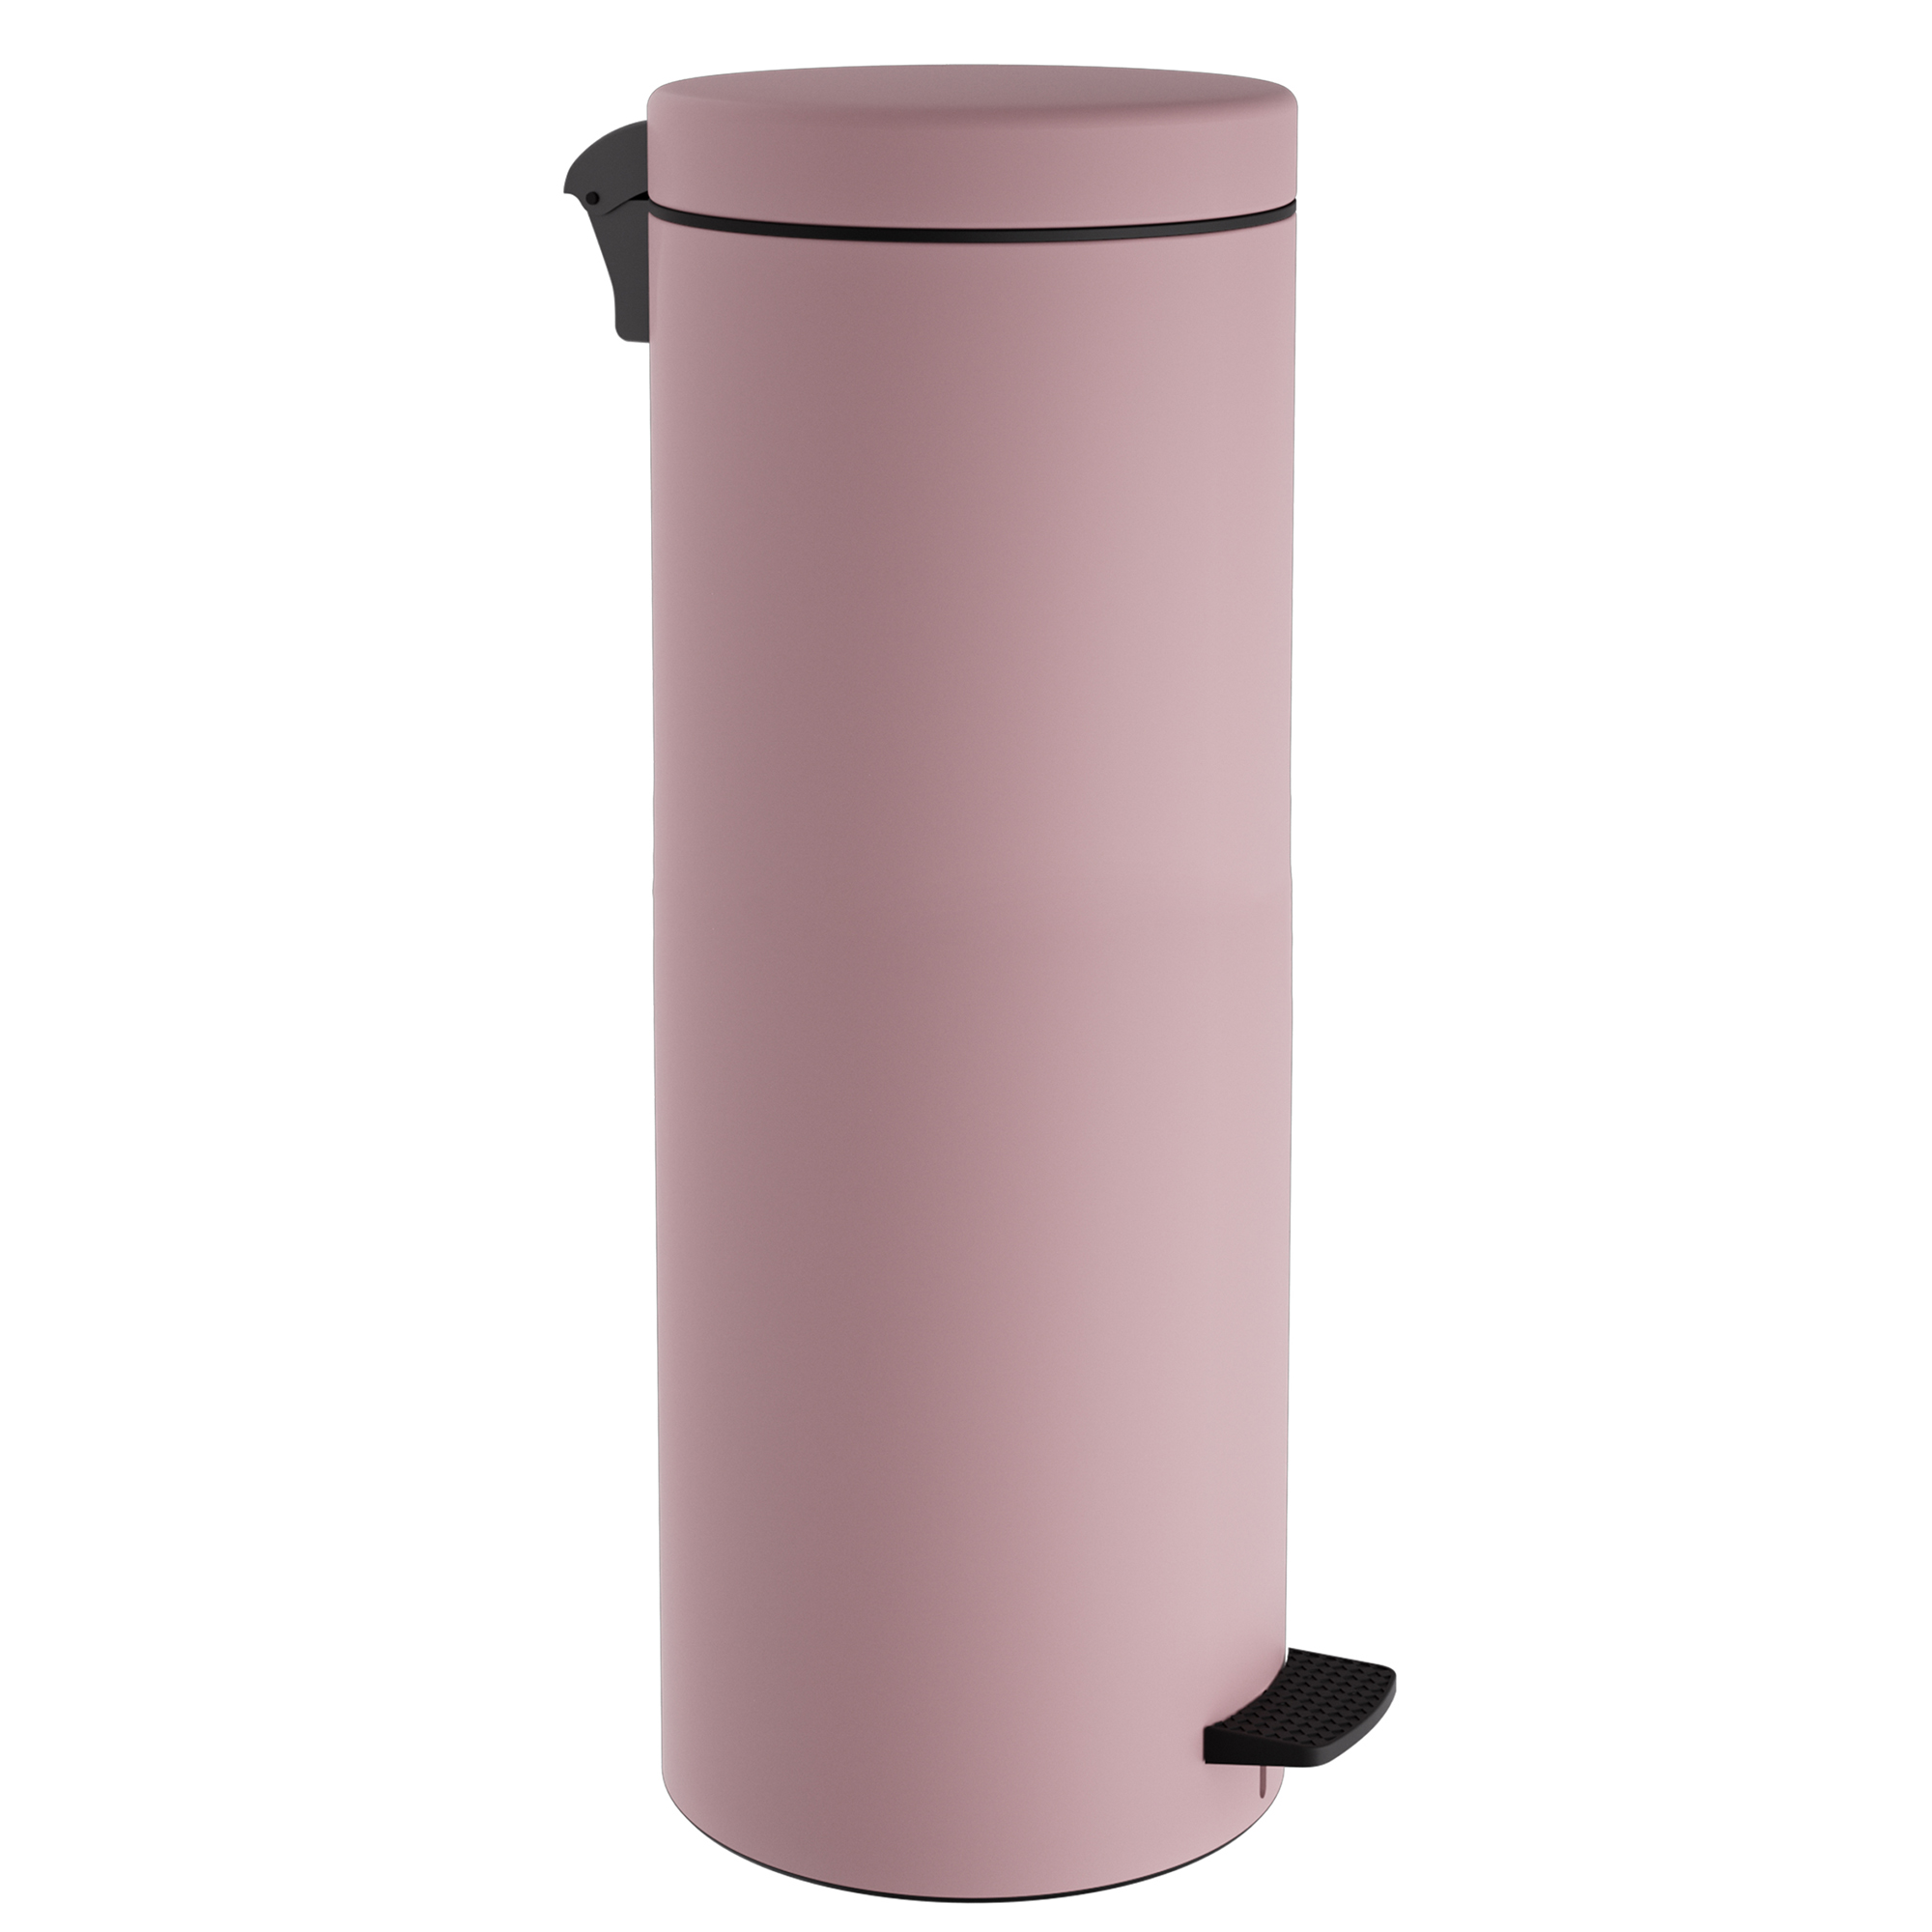 Καλάθι Απορριμμάτων 30lt Soft Close Ανοξείδωτο Matt Pink Pam & Co Φ25×65εκ. 2565-303 (Υλικό: Ανοξείδωτο, Χρώμα: Ροζ) – Pam & Co – 2565-303